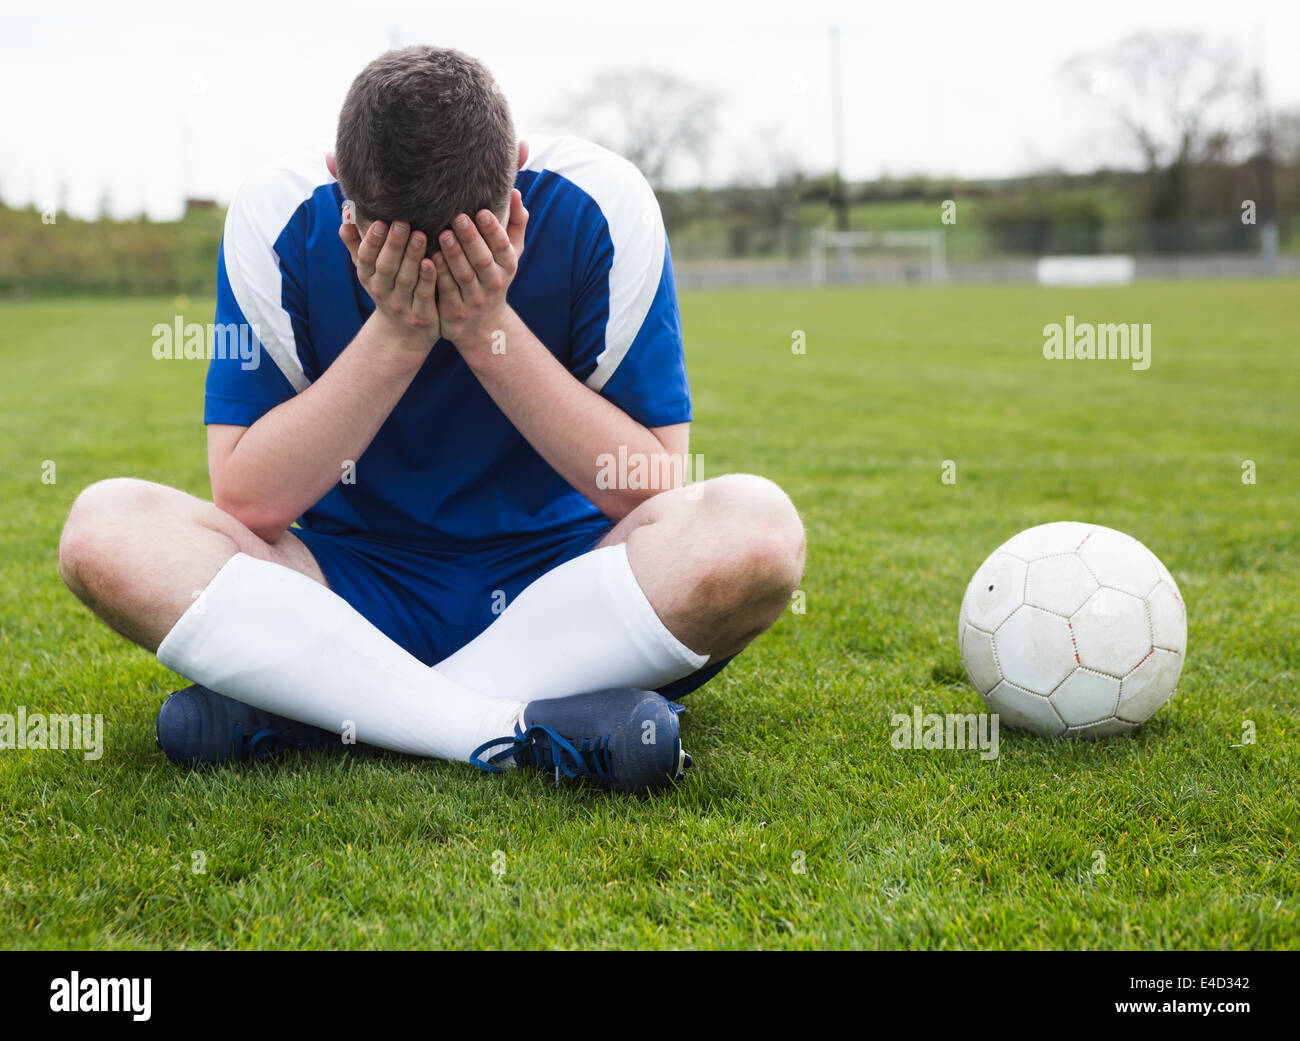 Déçu football player en bleu assis sur pitch après avoir perdu Banque D'Images